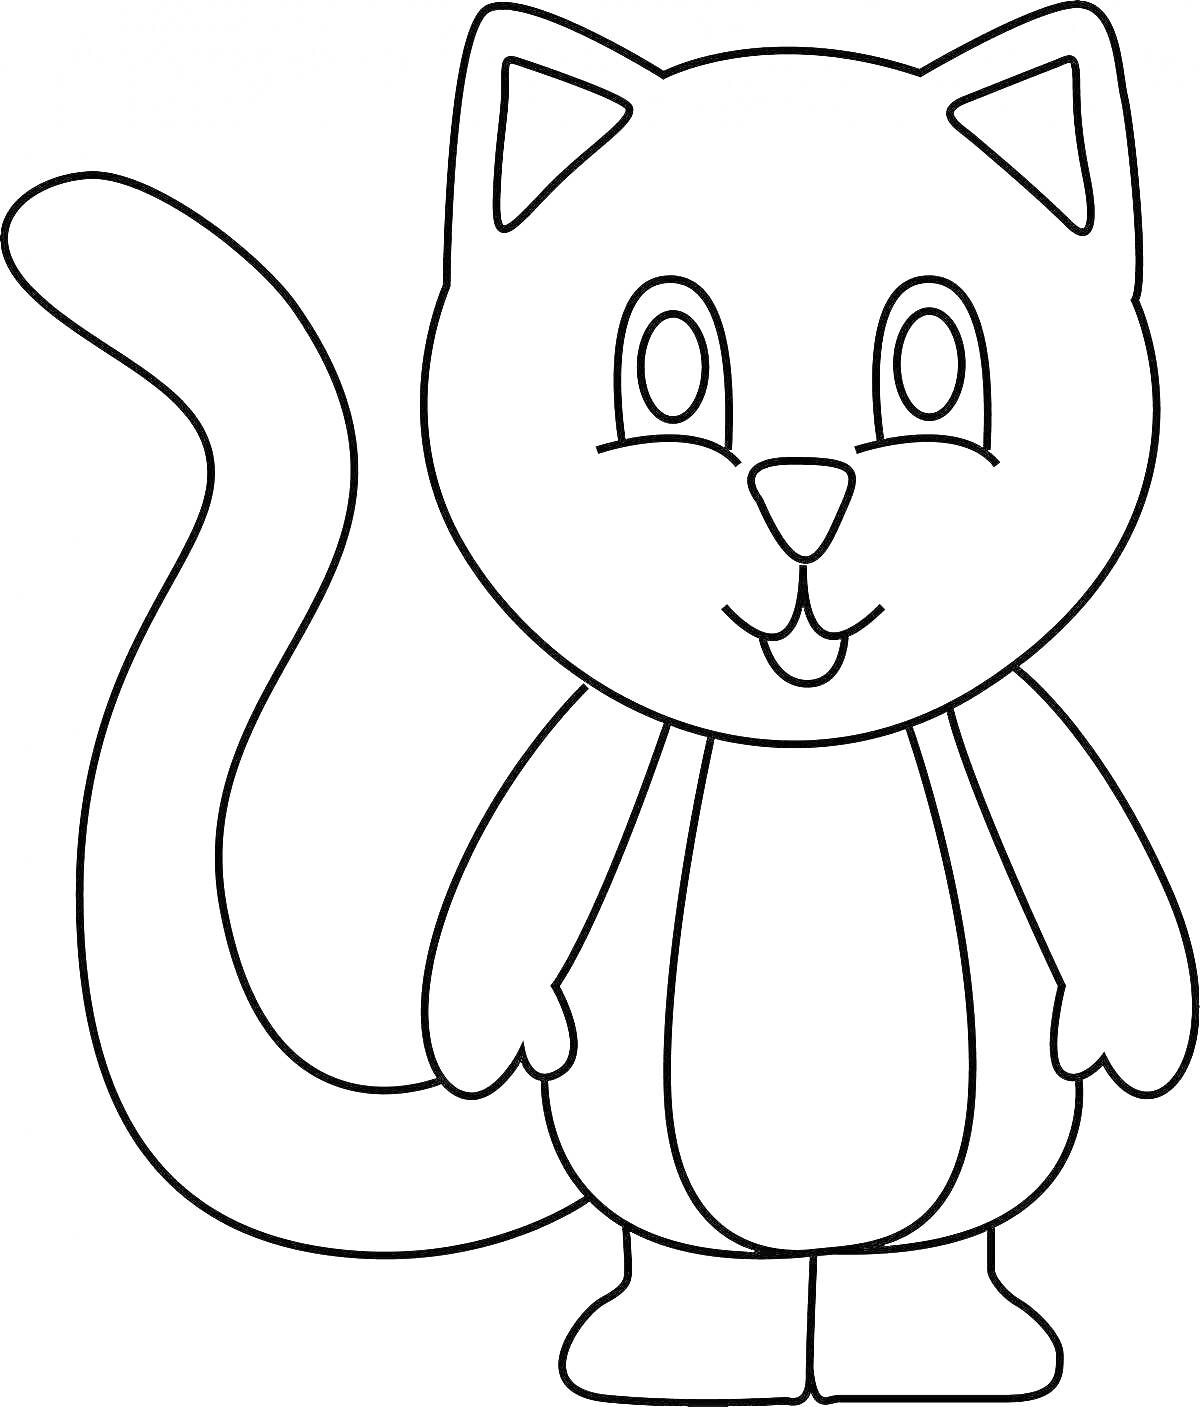 Раскраска Кошка с улыбающимся лицом и длинным хвостом